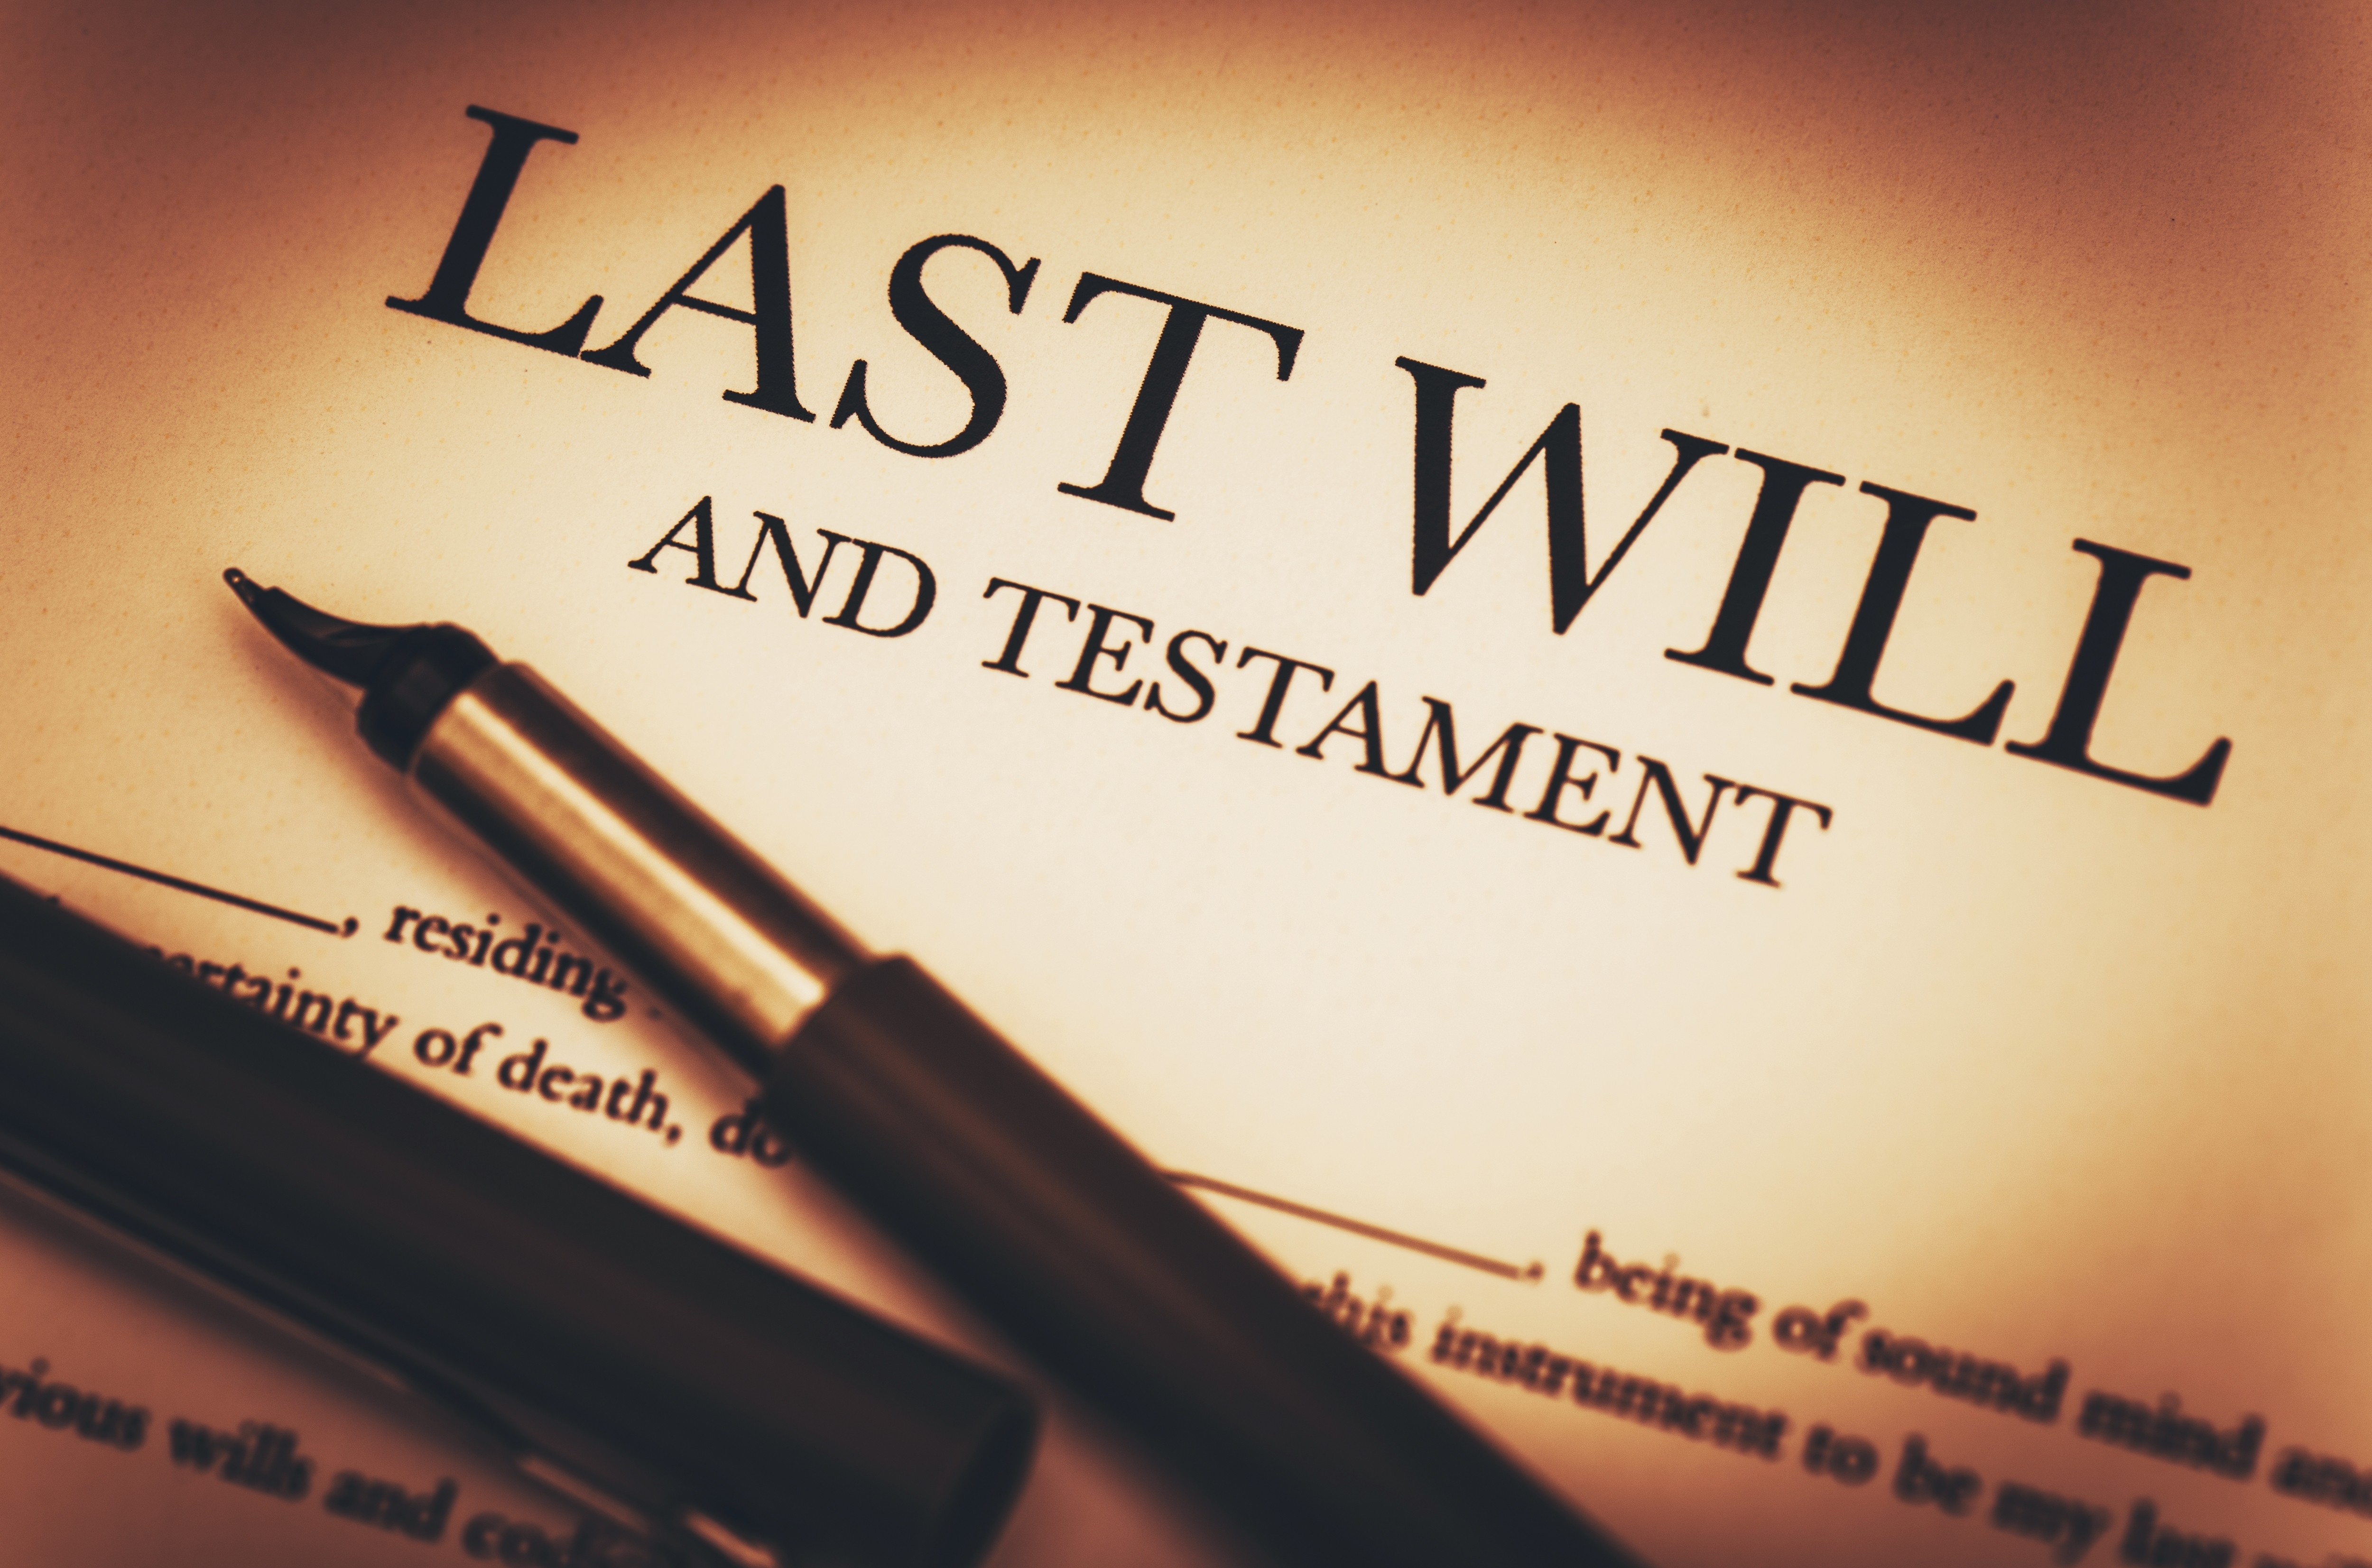 Un documento con el encabezamiento "Última voluntad y testamento" | Foto: Shutterstock